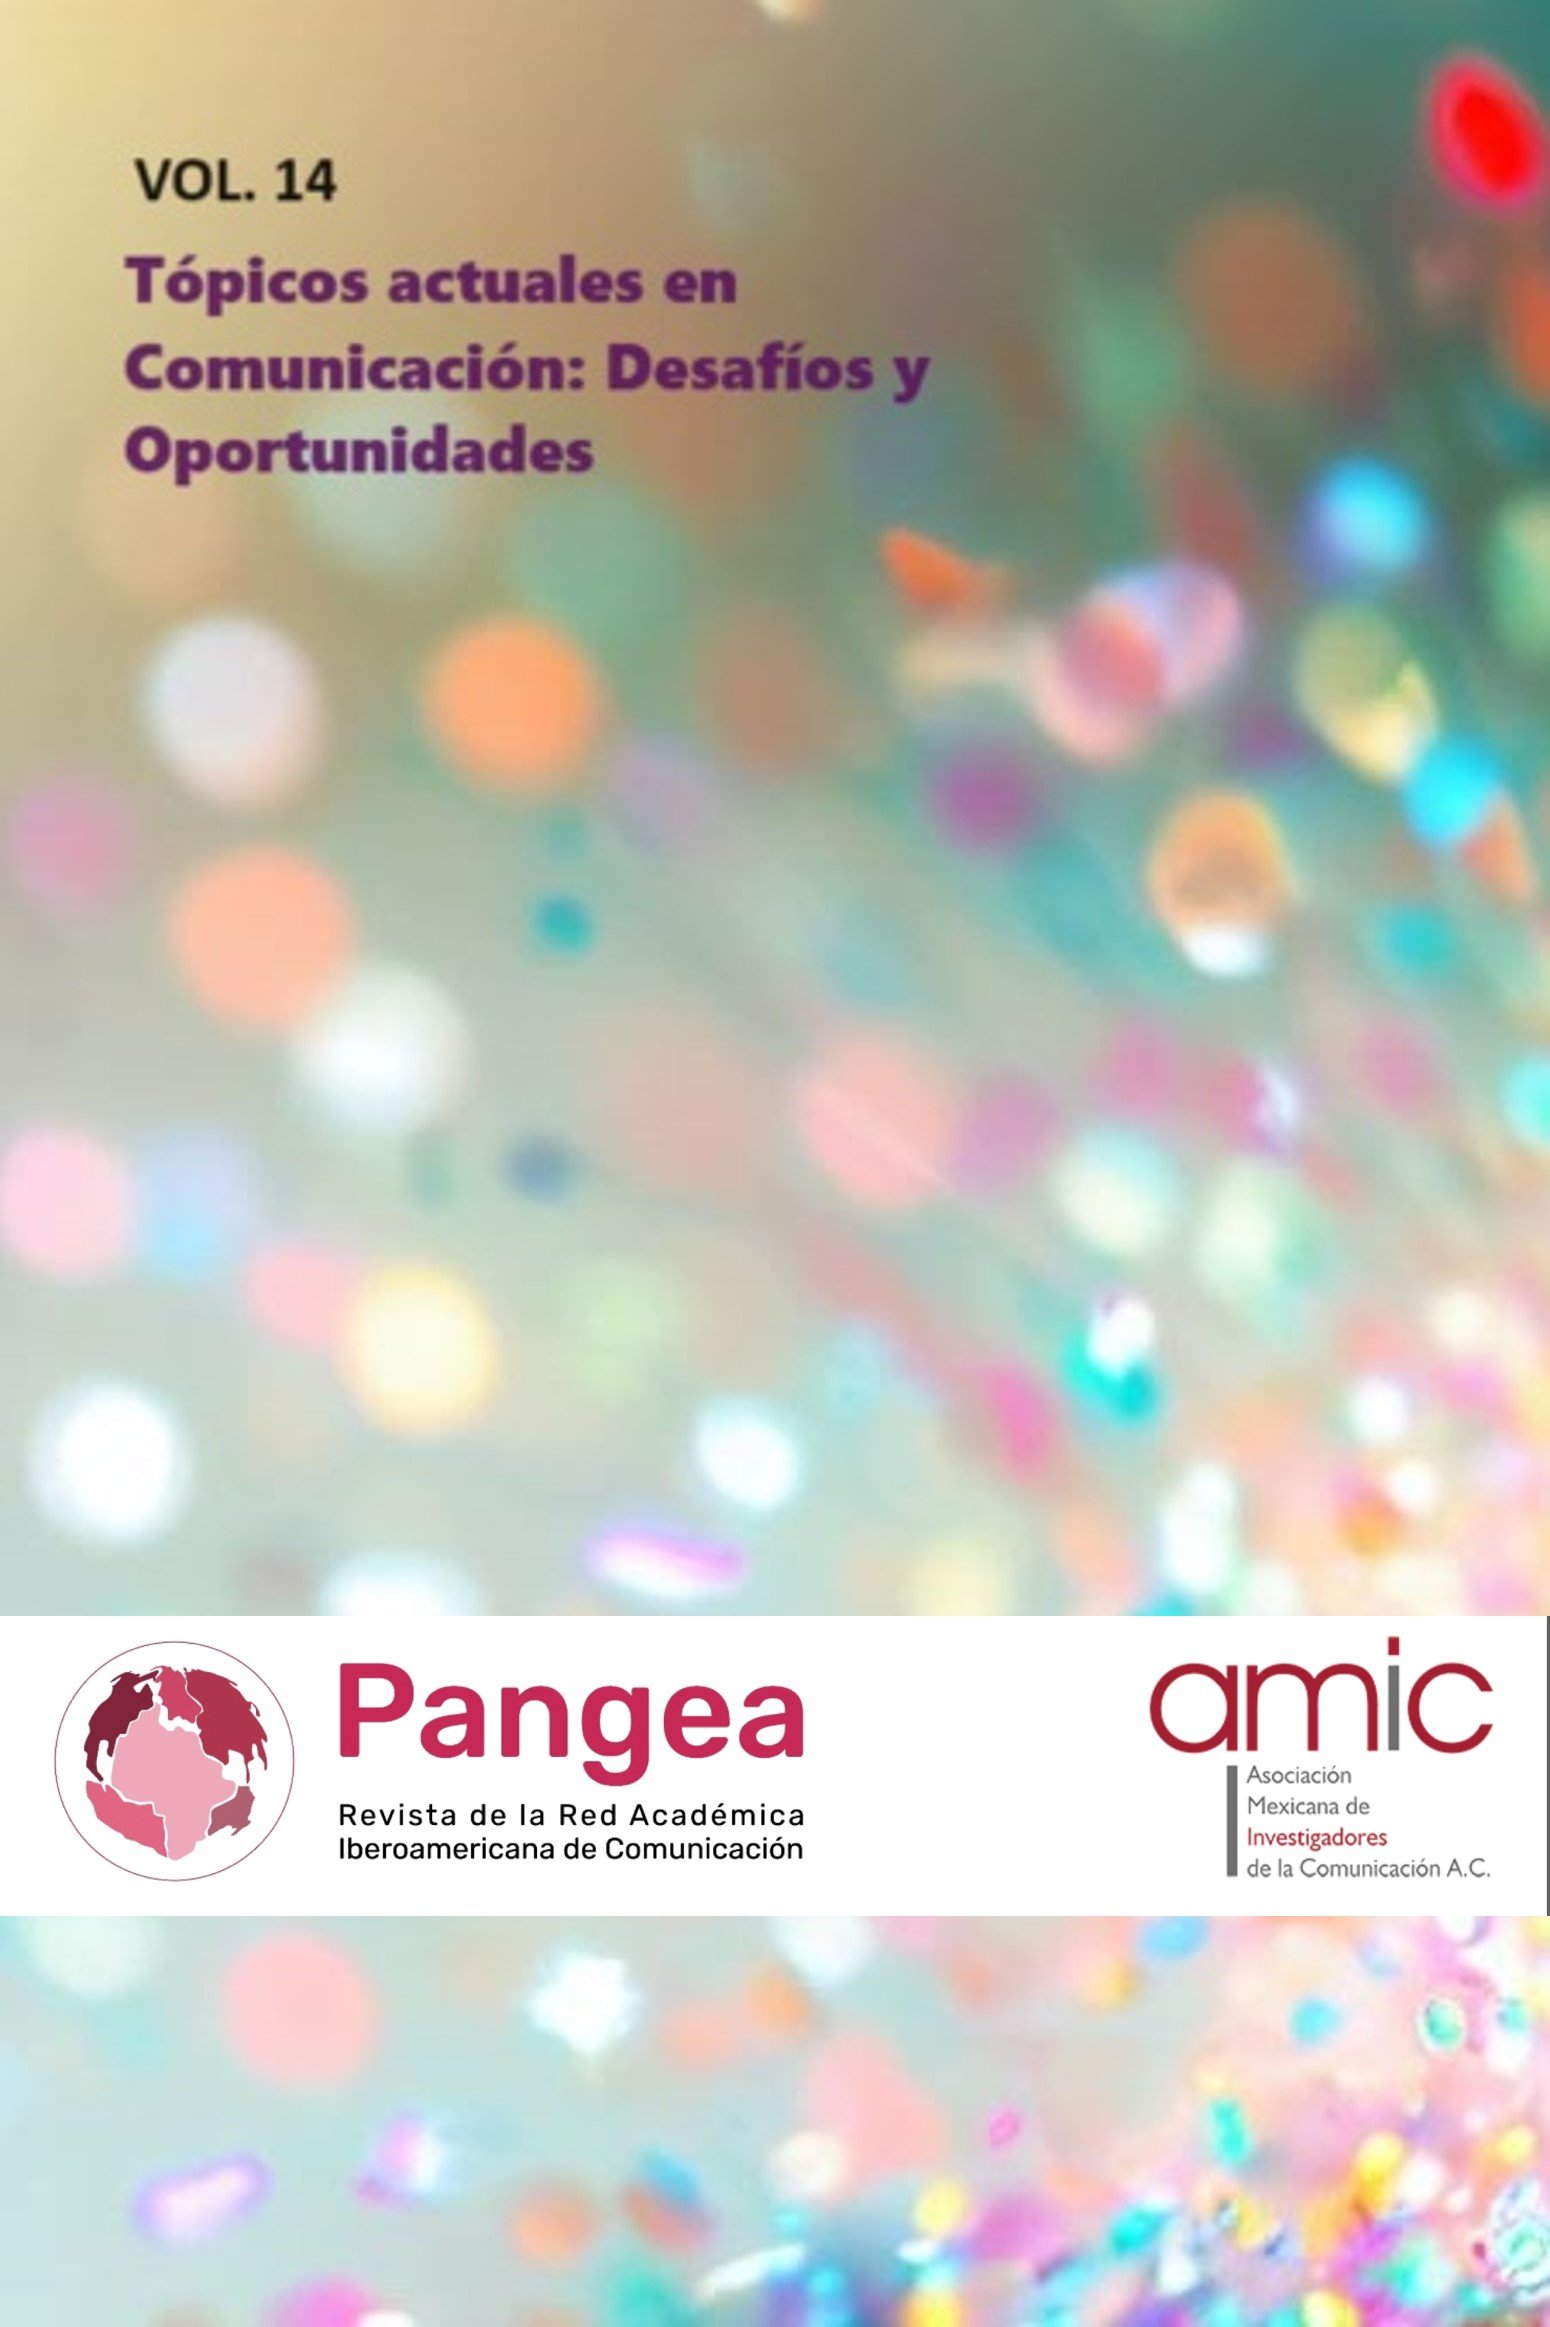 Vol. 14 Tópicos actuales en Comunicación: Desafíos y Oportunidades. Revista Pangea